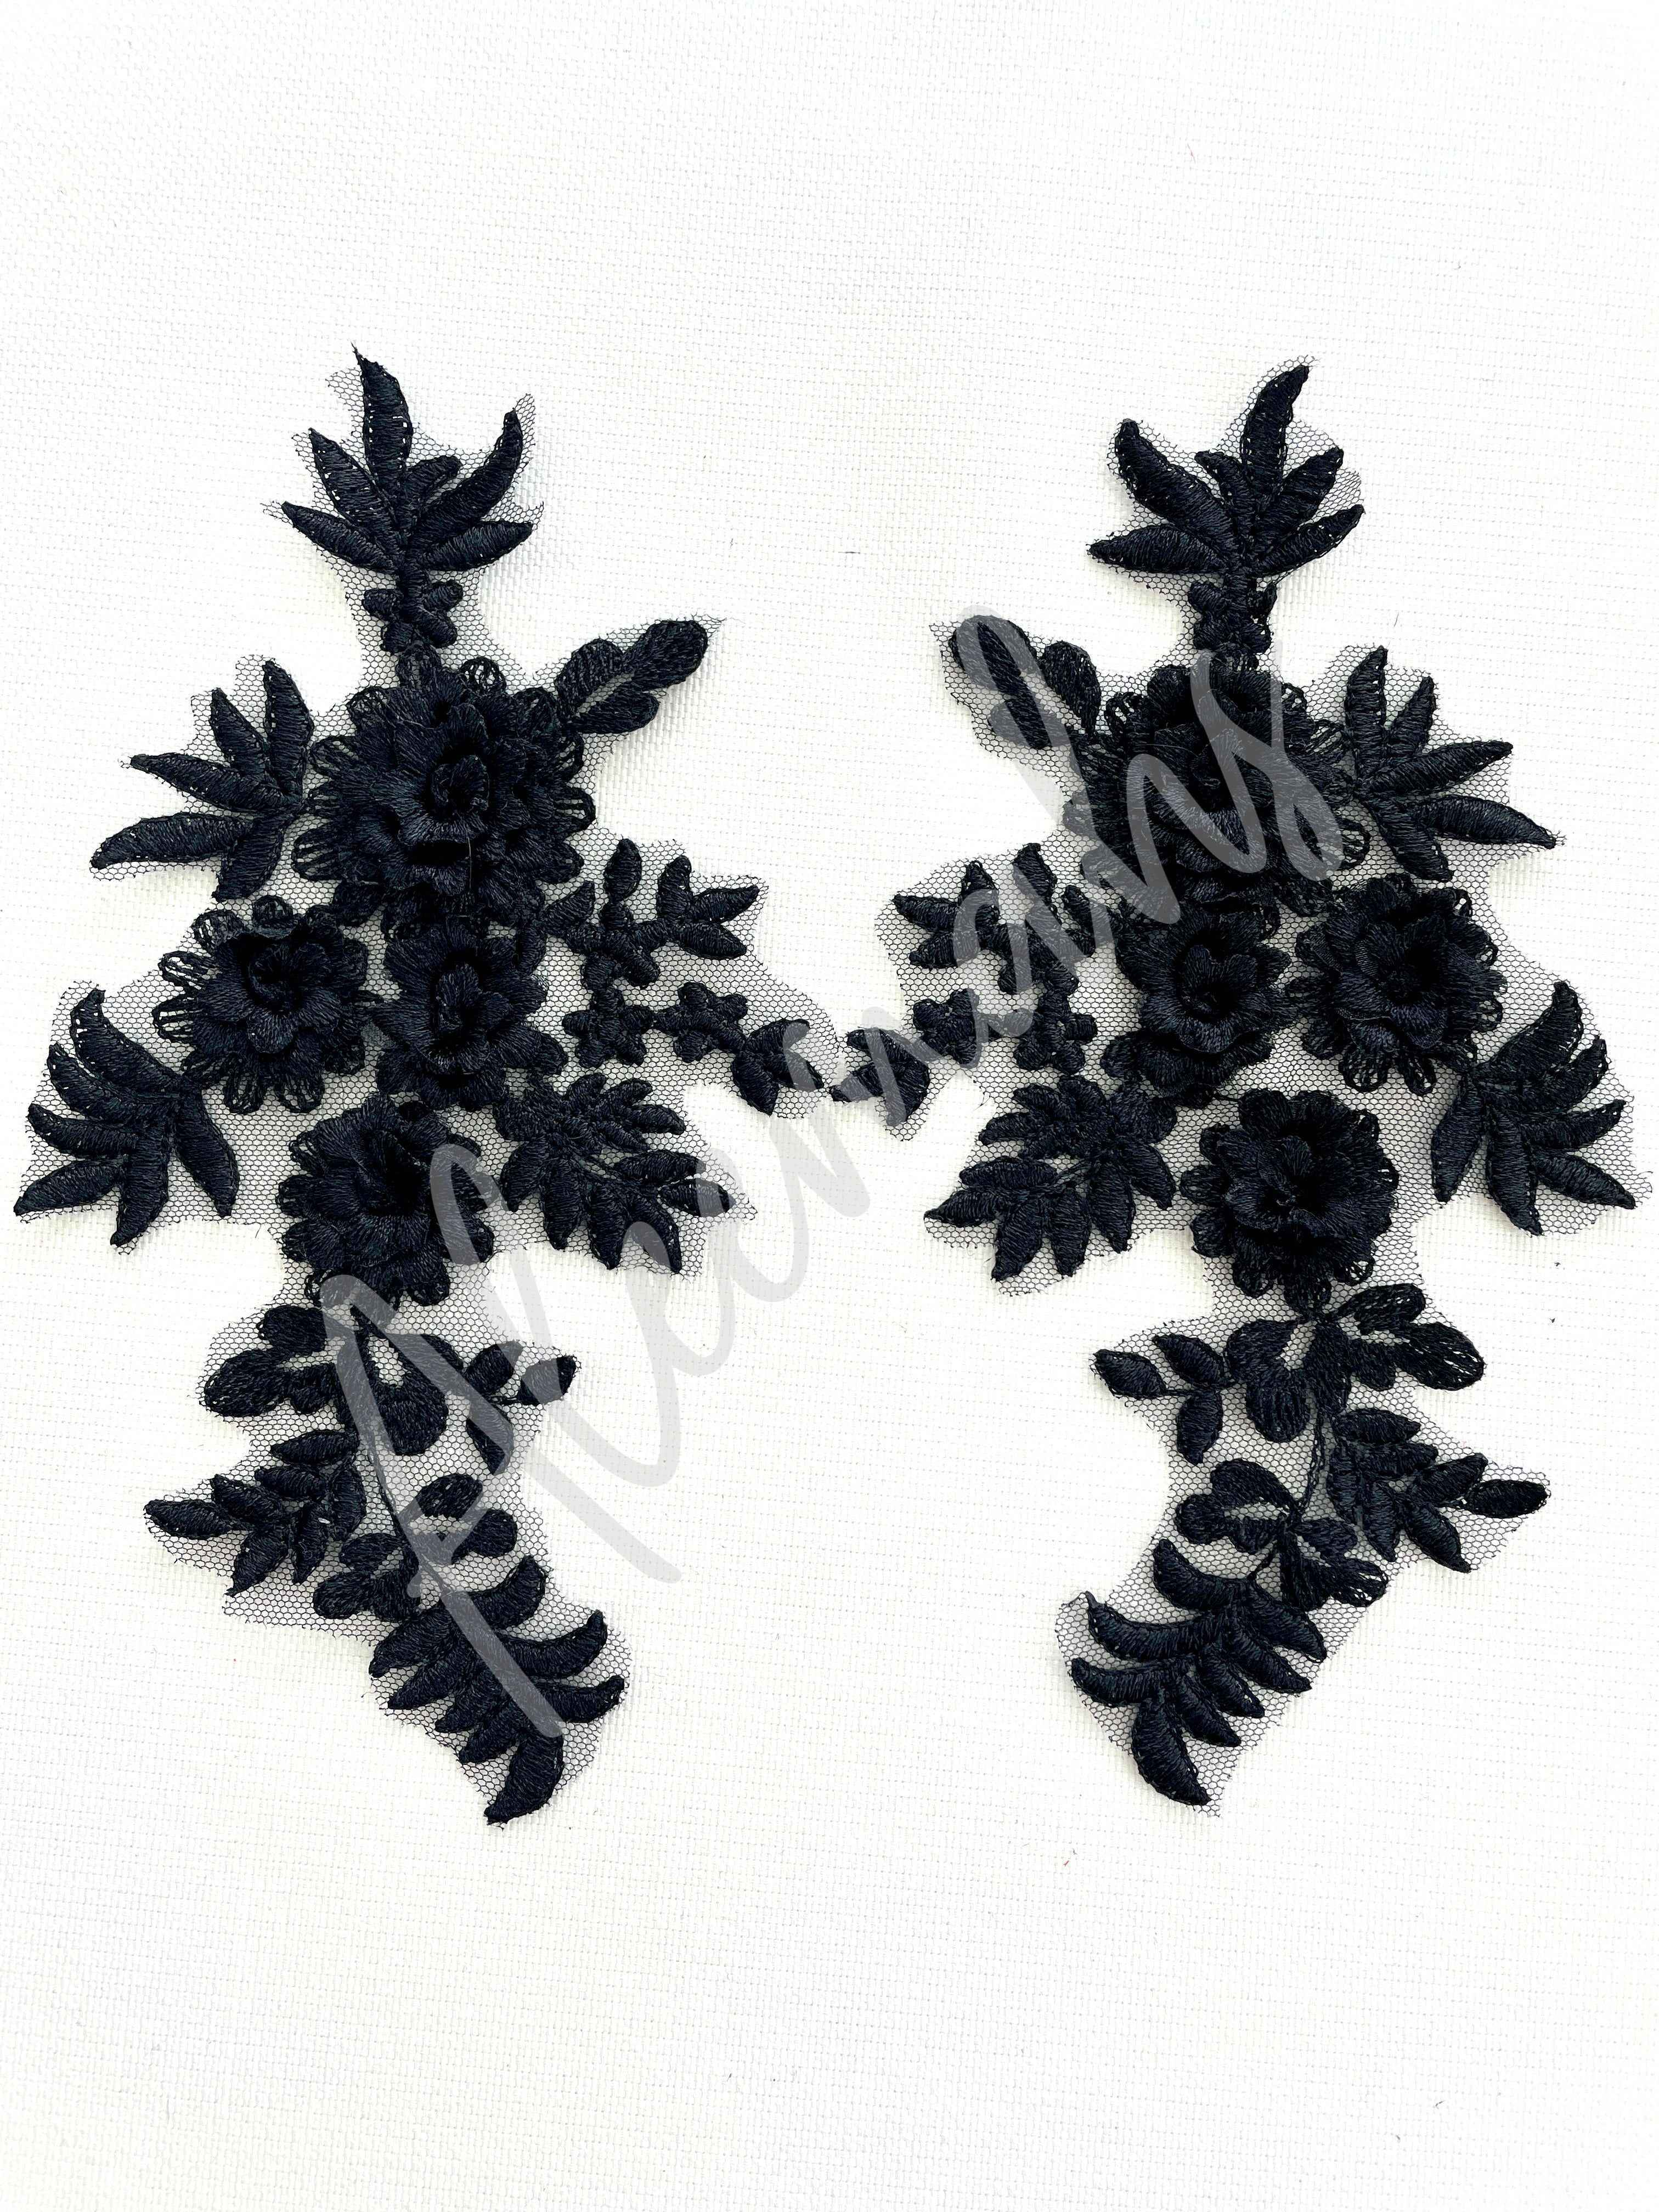 LA-033: 3D floral lace applique pair: Black